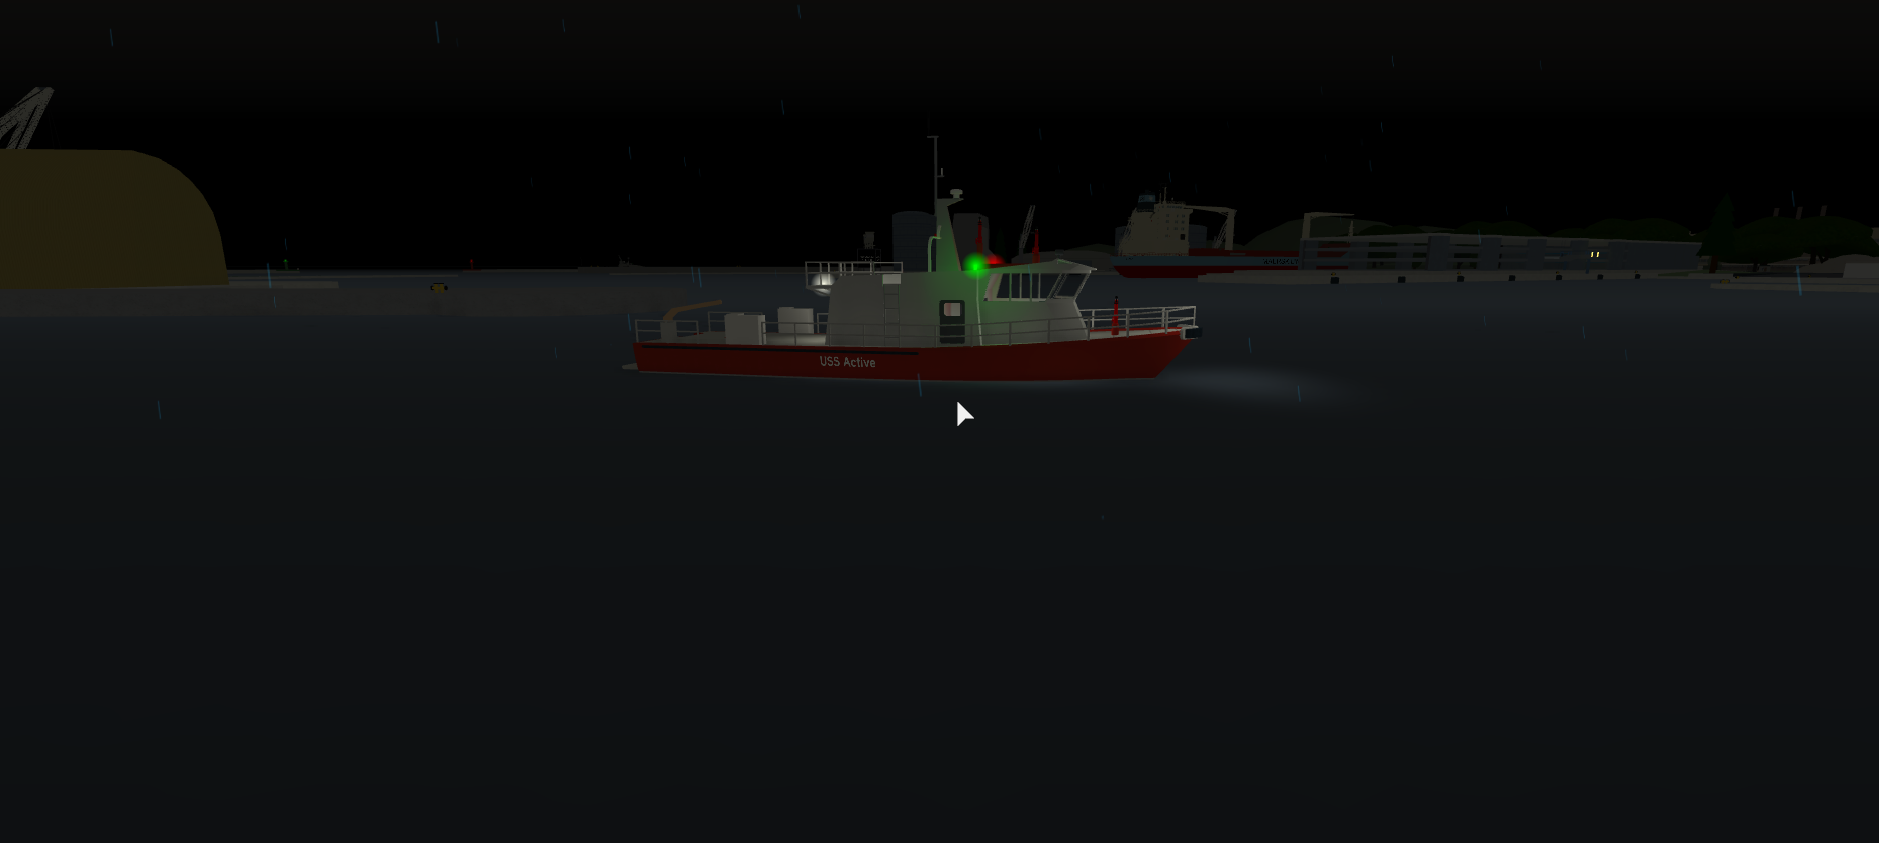 Fireboat Dynamic Ship Simulator Iii Wiki Fandom - roblox dynamic ship simulator 3 fire boat